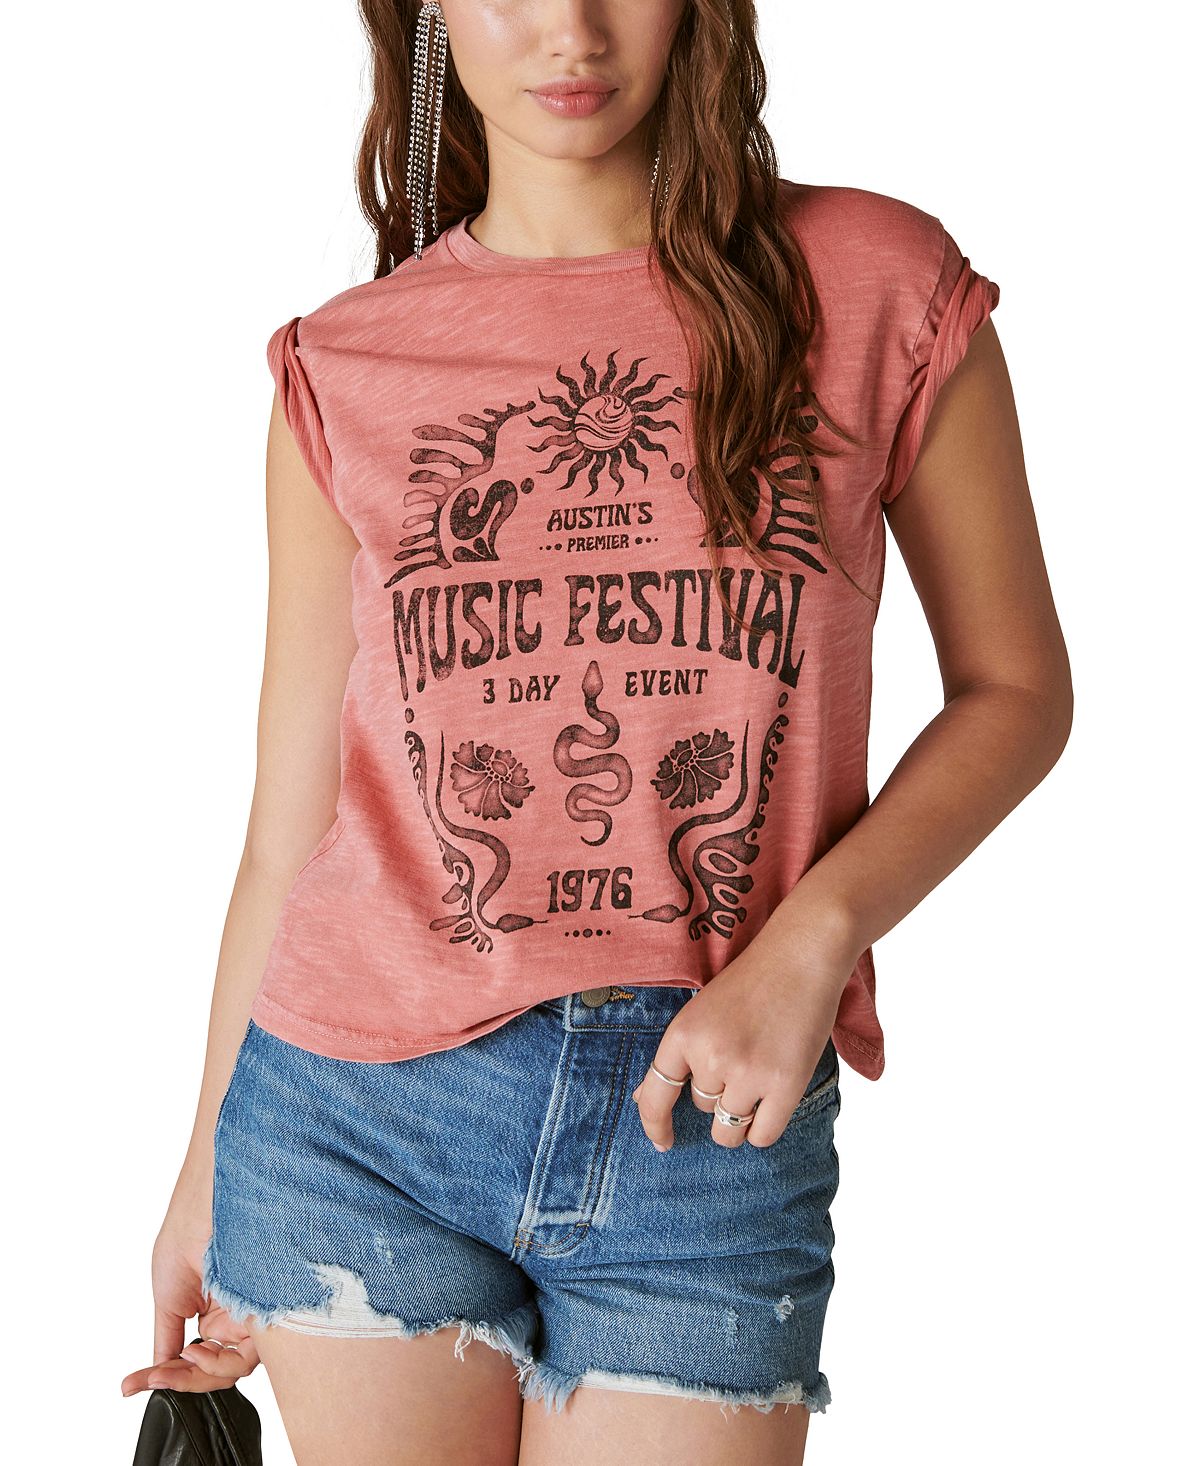 Женская футболка с музыкальным фестивалем в Остине Lucky Brand